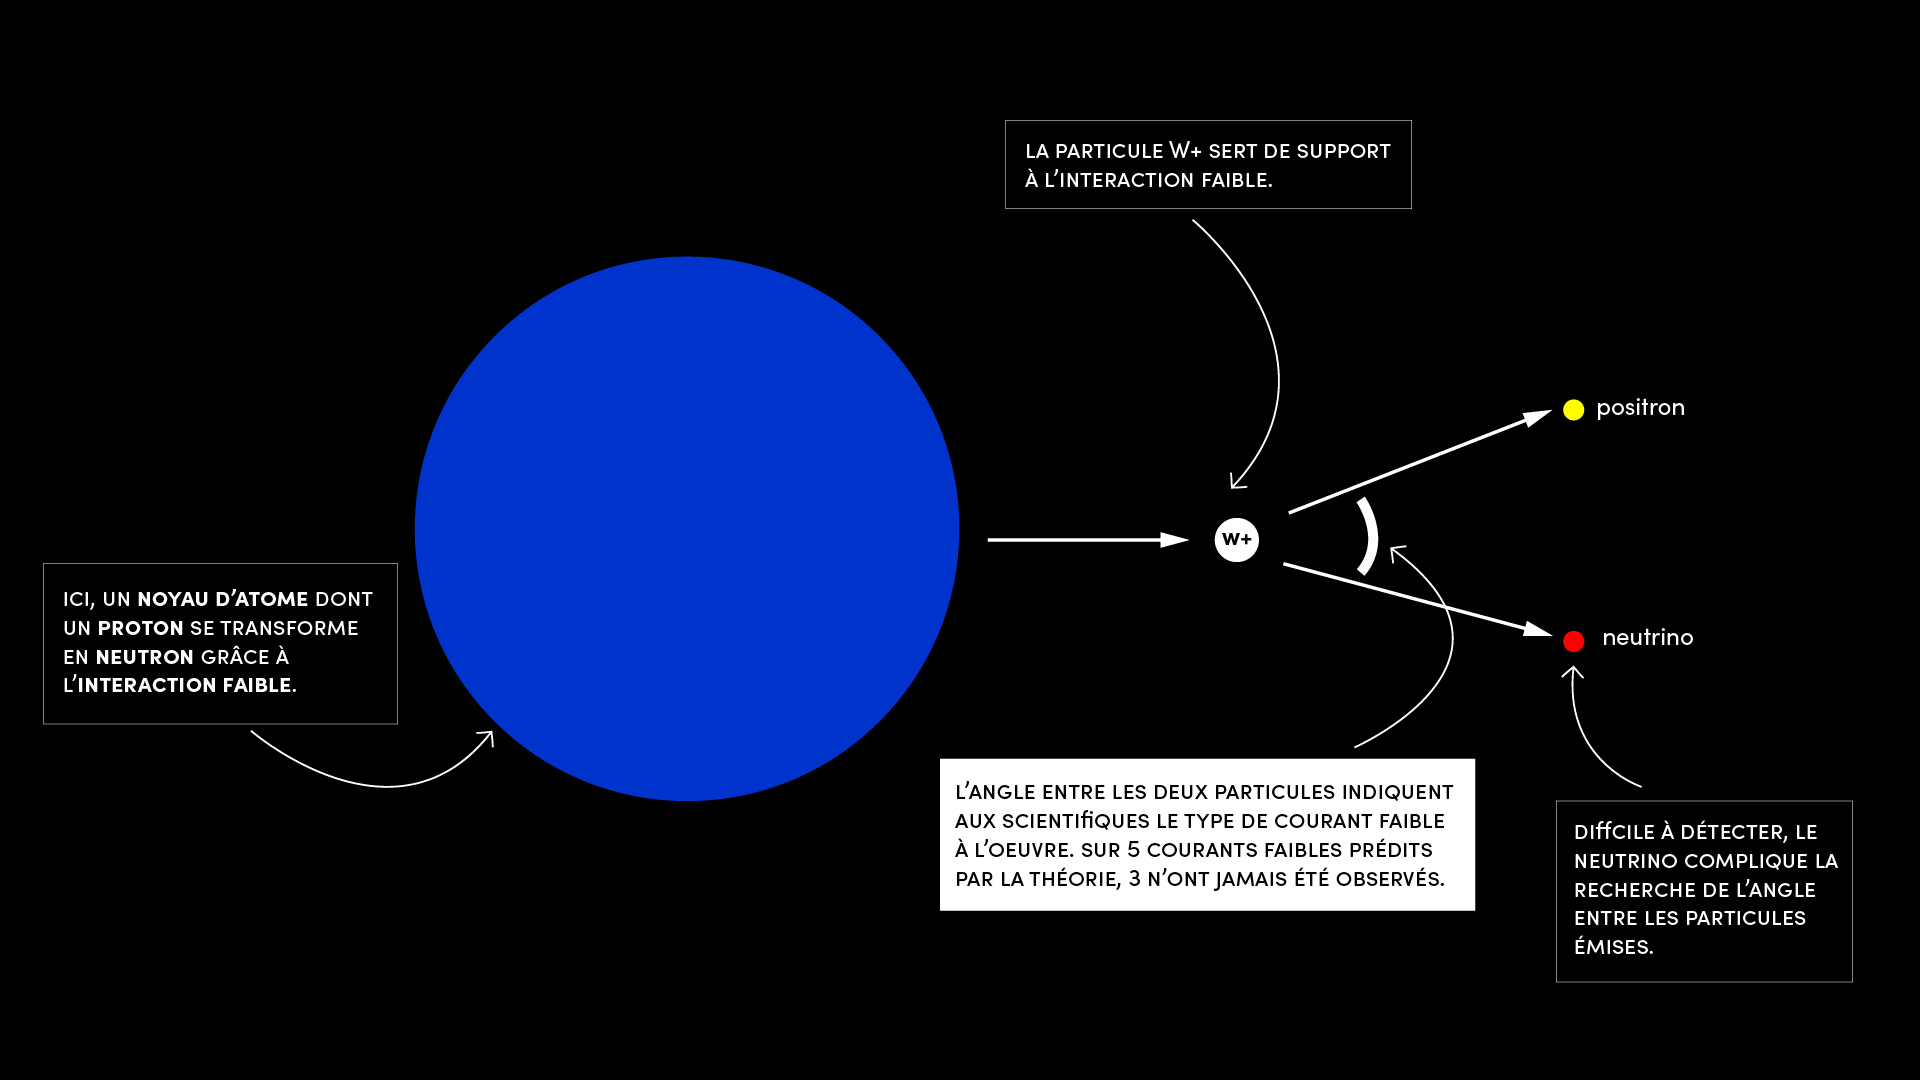 Pour observer les courants faibles exotiques, les scientifiques du projet WISArD décortiquent la désintégration bêta. Ce phénomène permet à un noyau d’atome de transformer un proton en neutron en émettant un positron et un neutrino. © Marie Delille